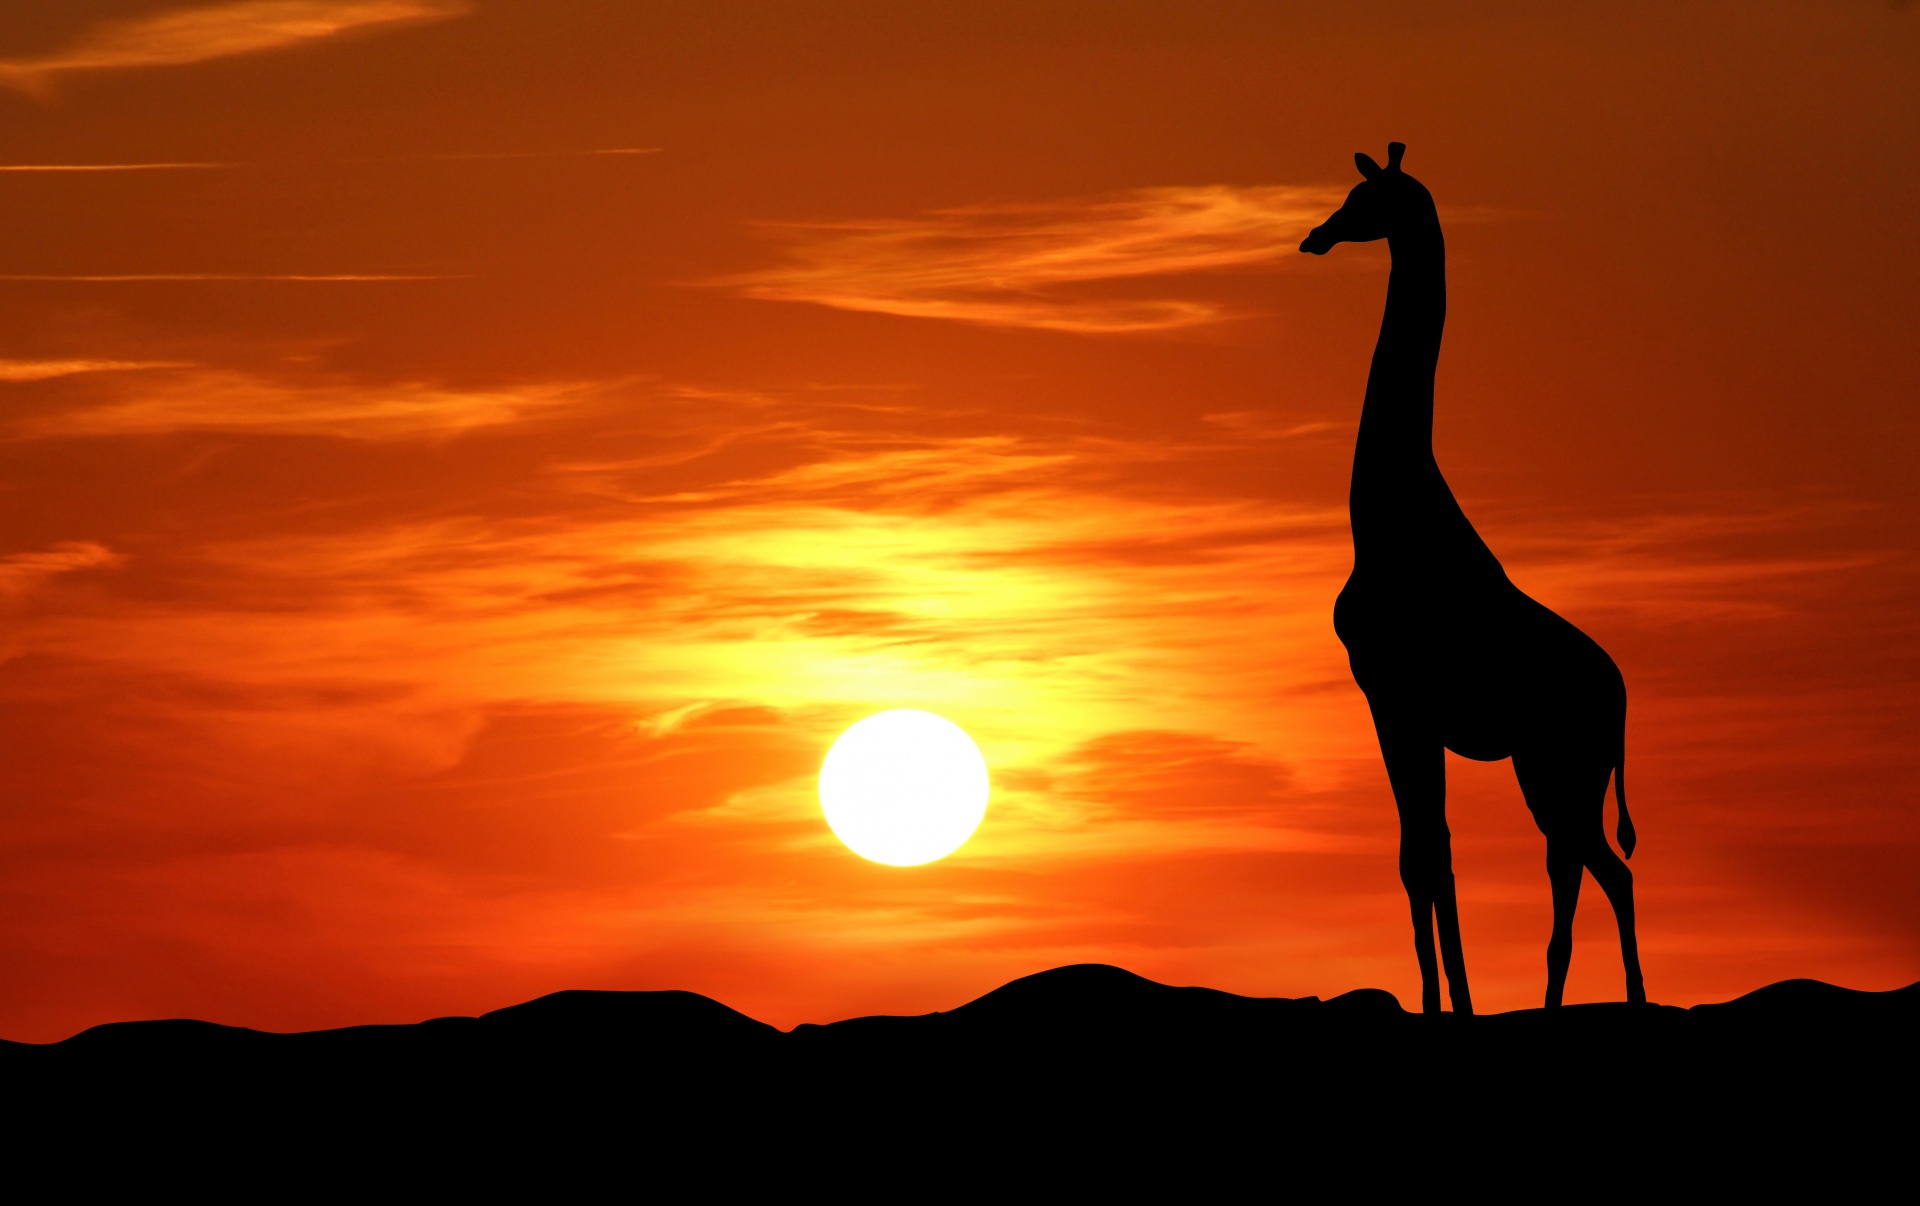 giraffe sunset silhouette free photo